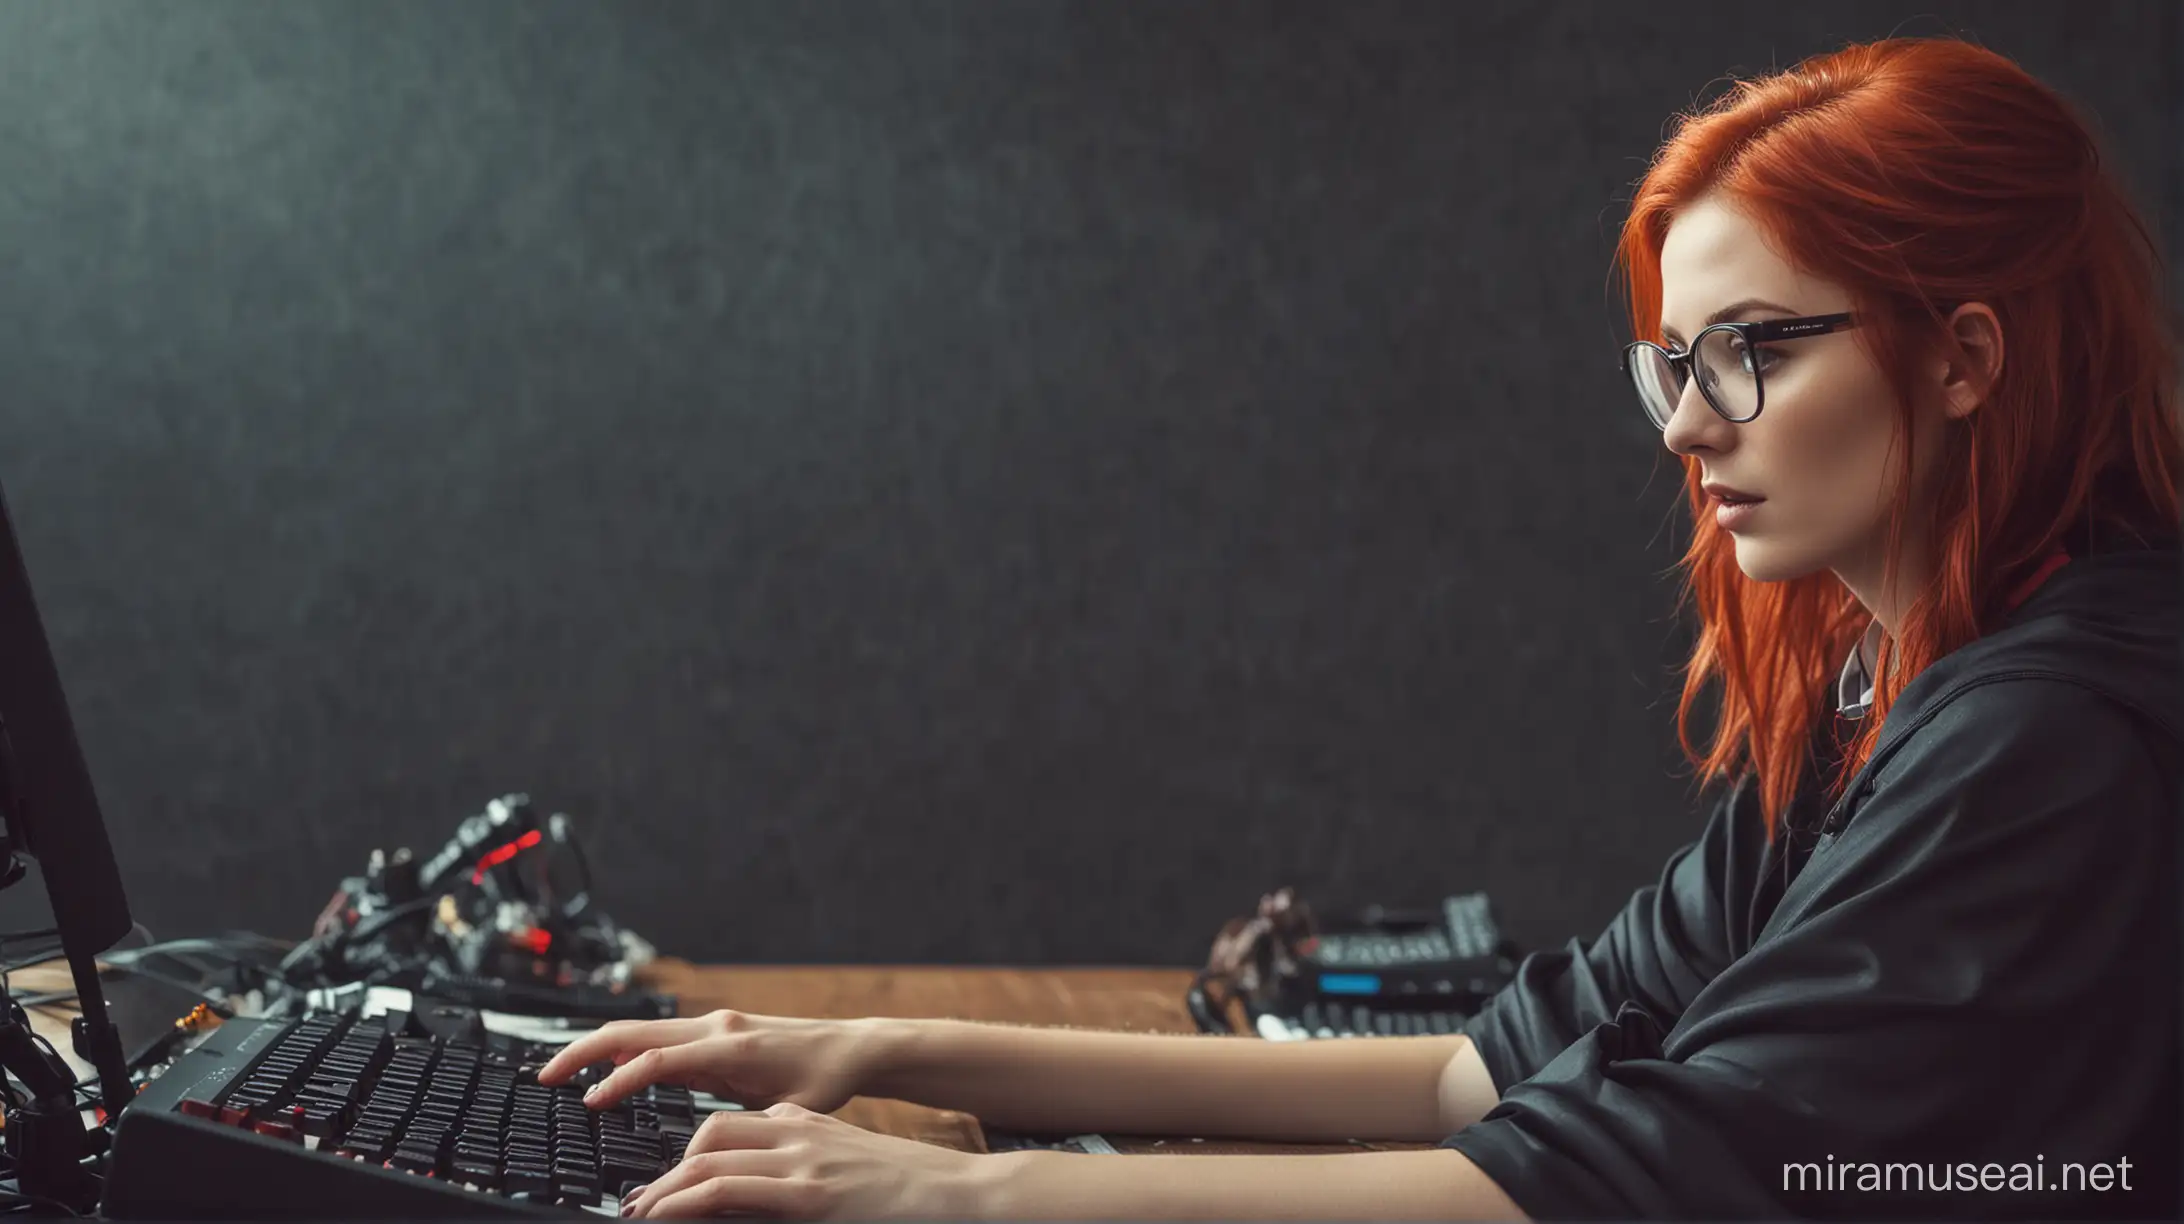 Hackering, rote Haare, Brille umhang, geheimnissvoll, Tastatur über den Rücken blicken